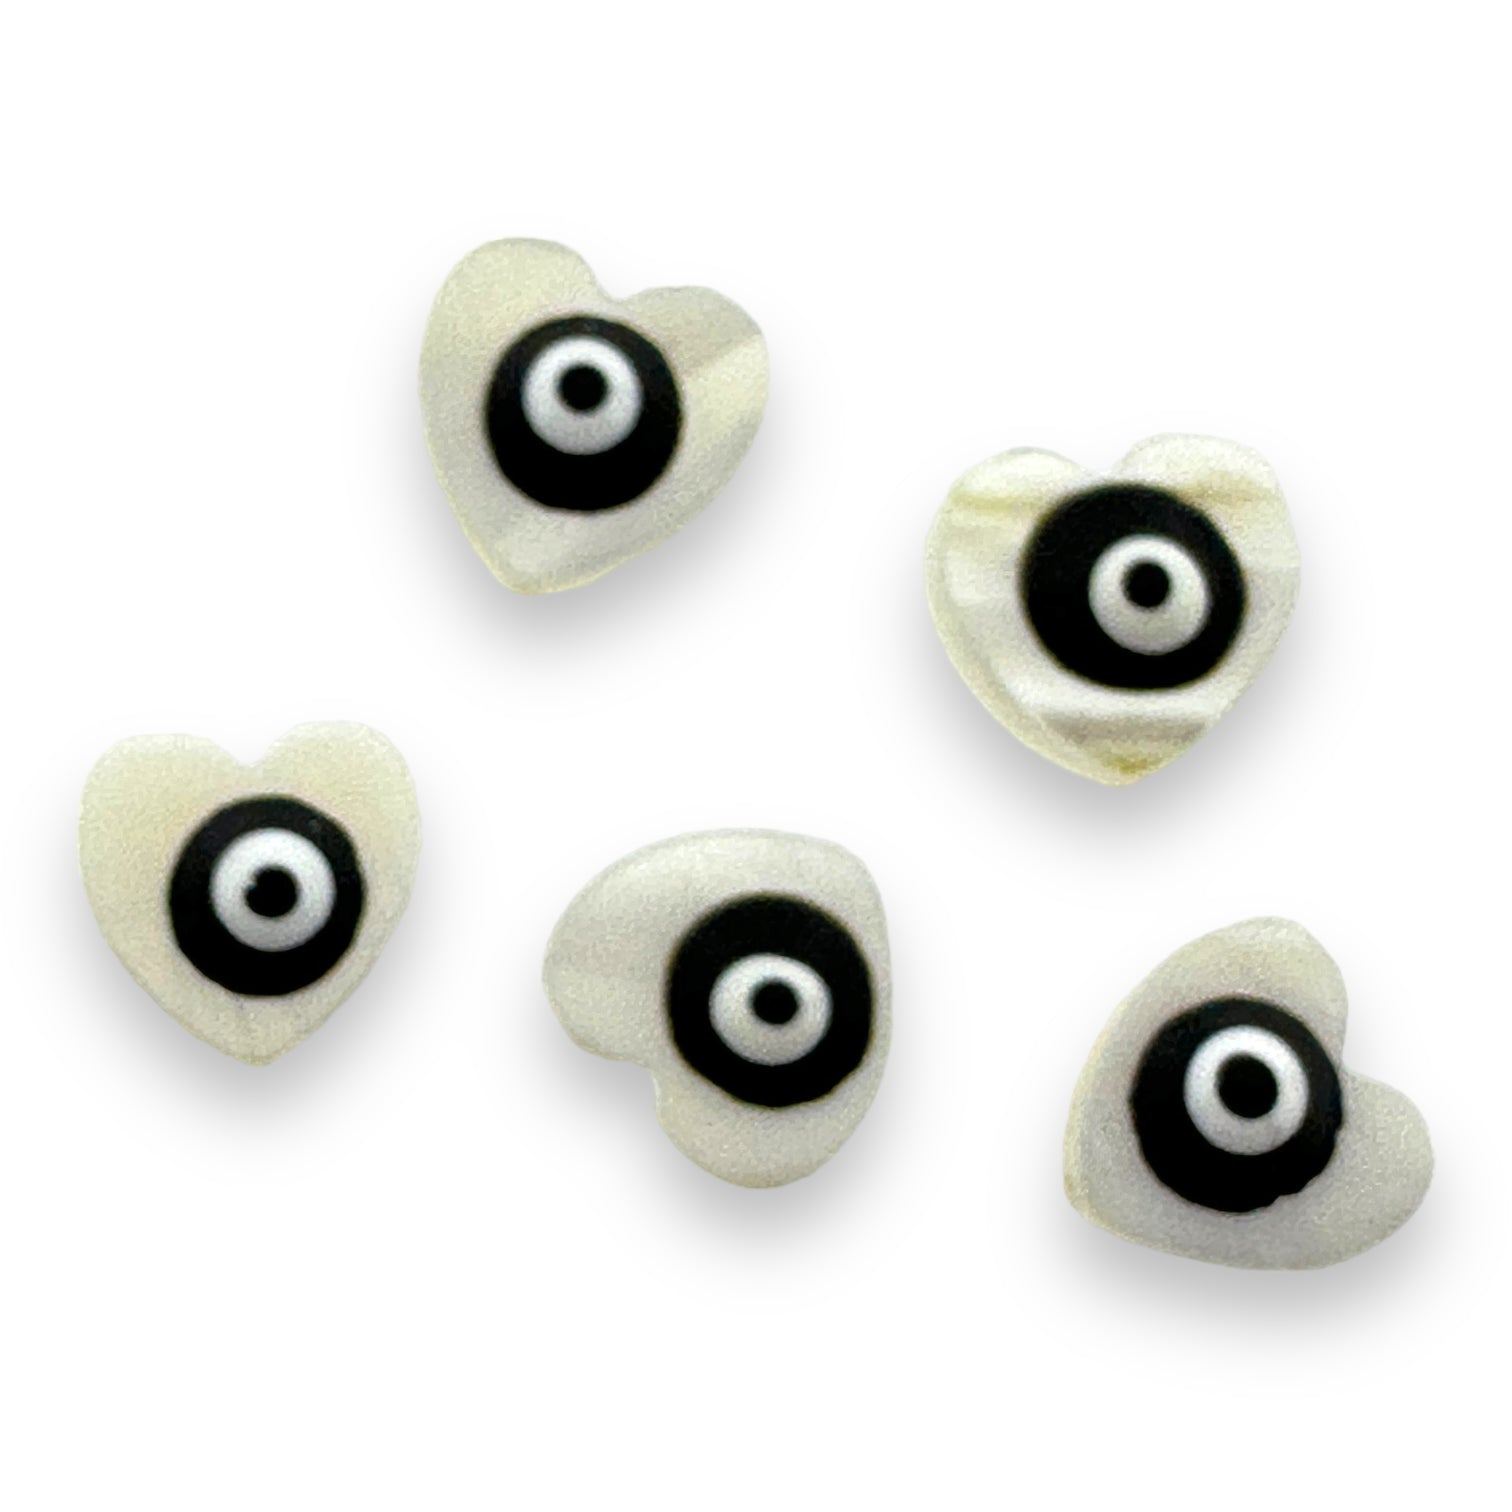 Zoetwaterschelp kraal hartje evil eye zwart 10mm-Kralen-Kraaltjes van Renate